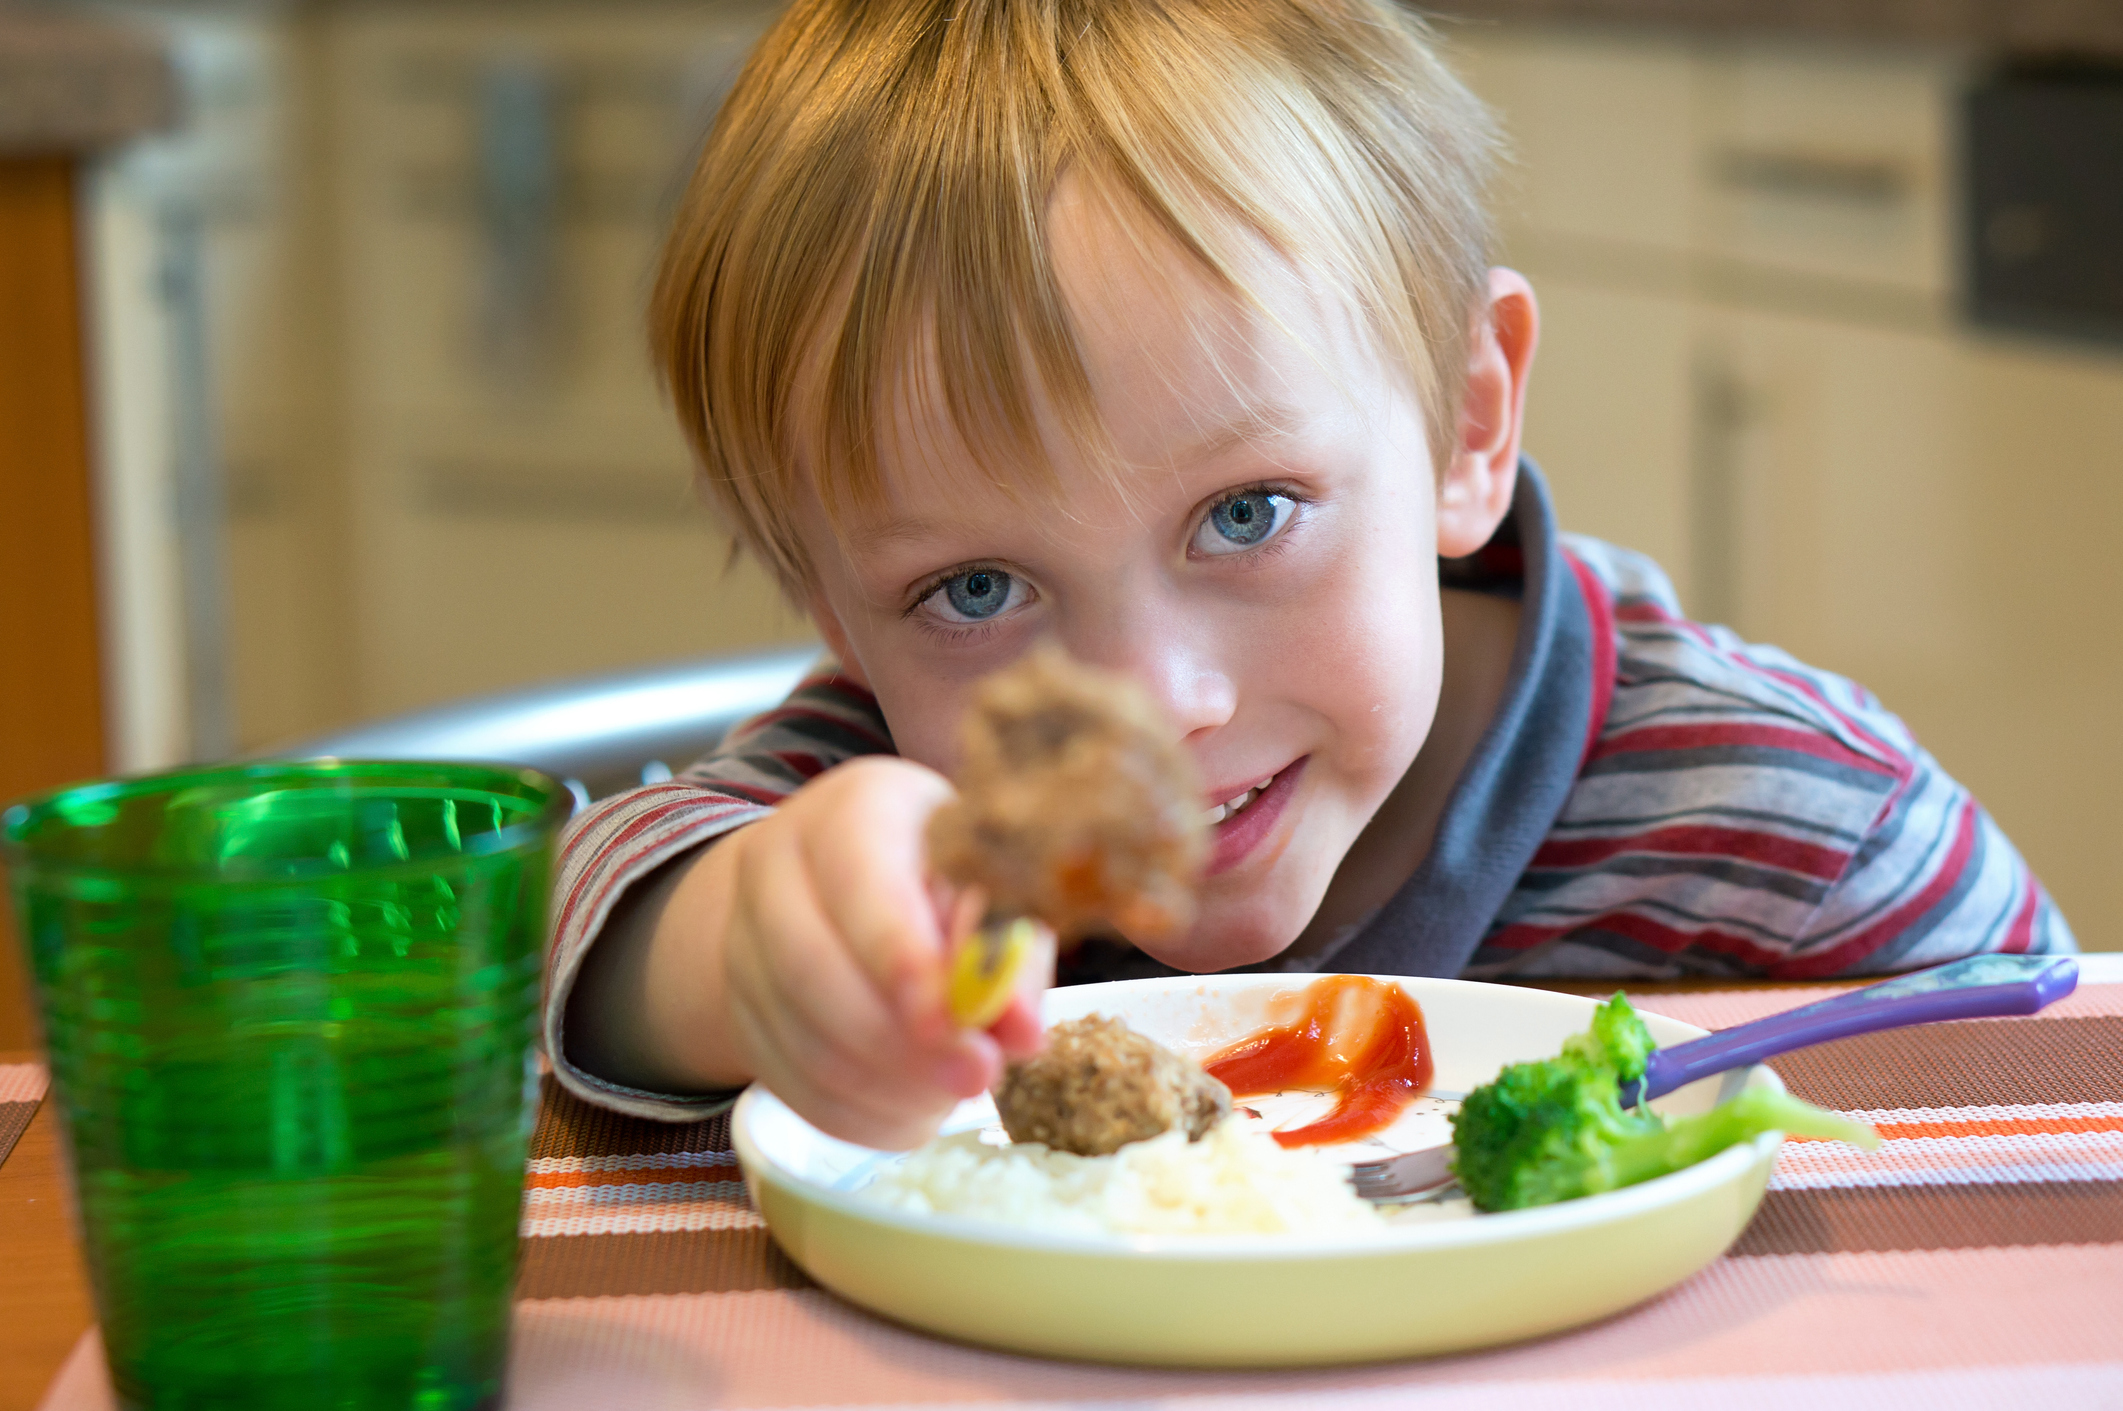 Encontrar el momento para cocinar con los niños, es bueno invitarlos a descubrir sabores y texturas (Getty Images)